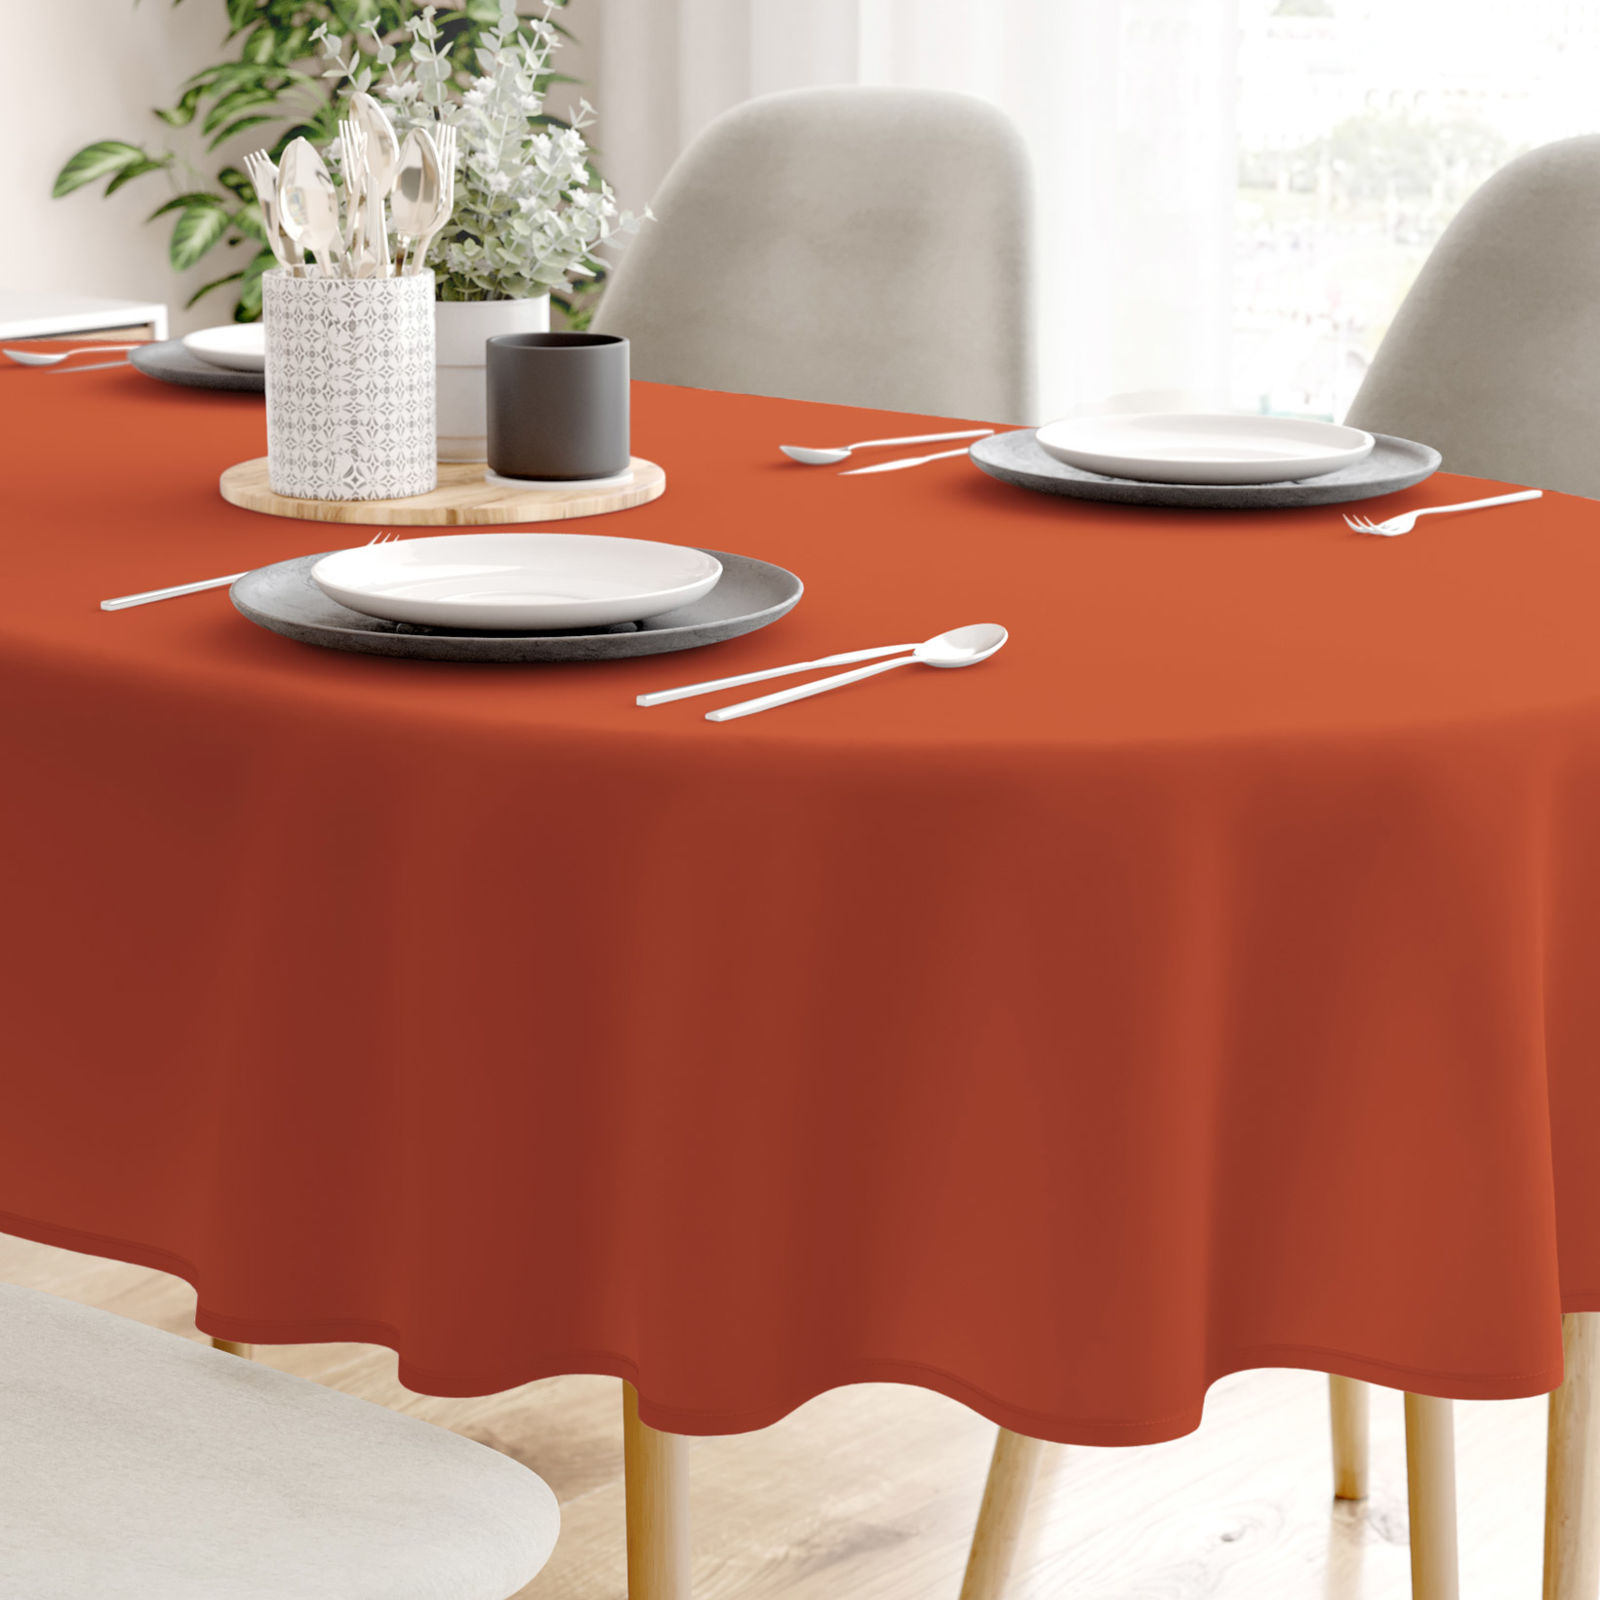 LONETA dekoratív asztalterítő - tégla színű - ovális